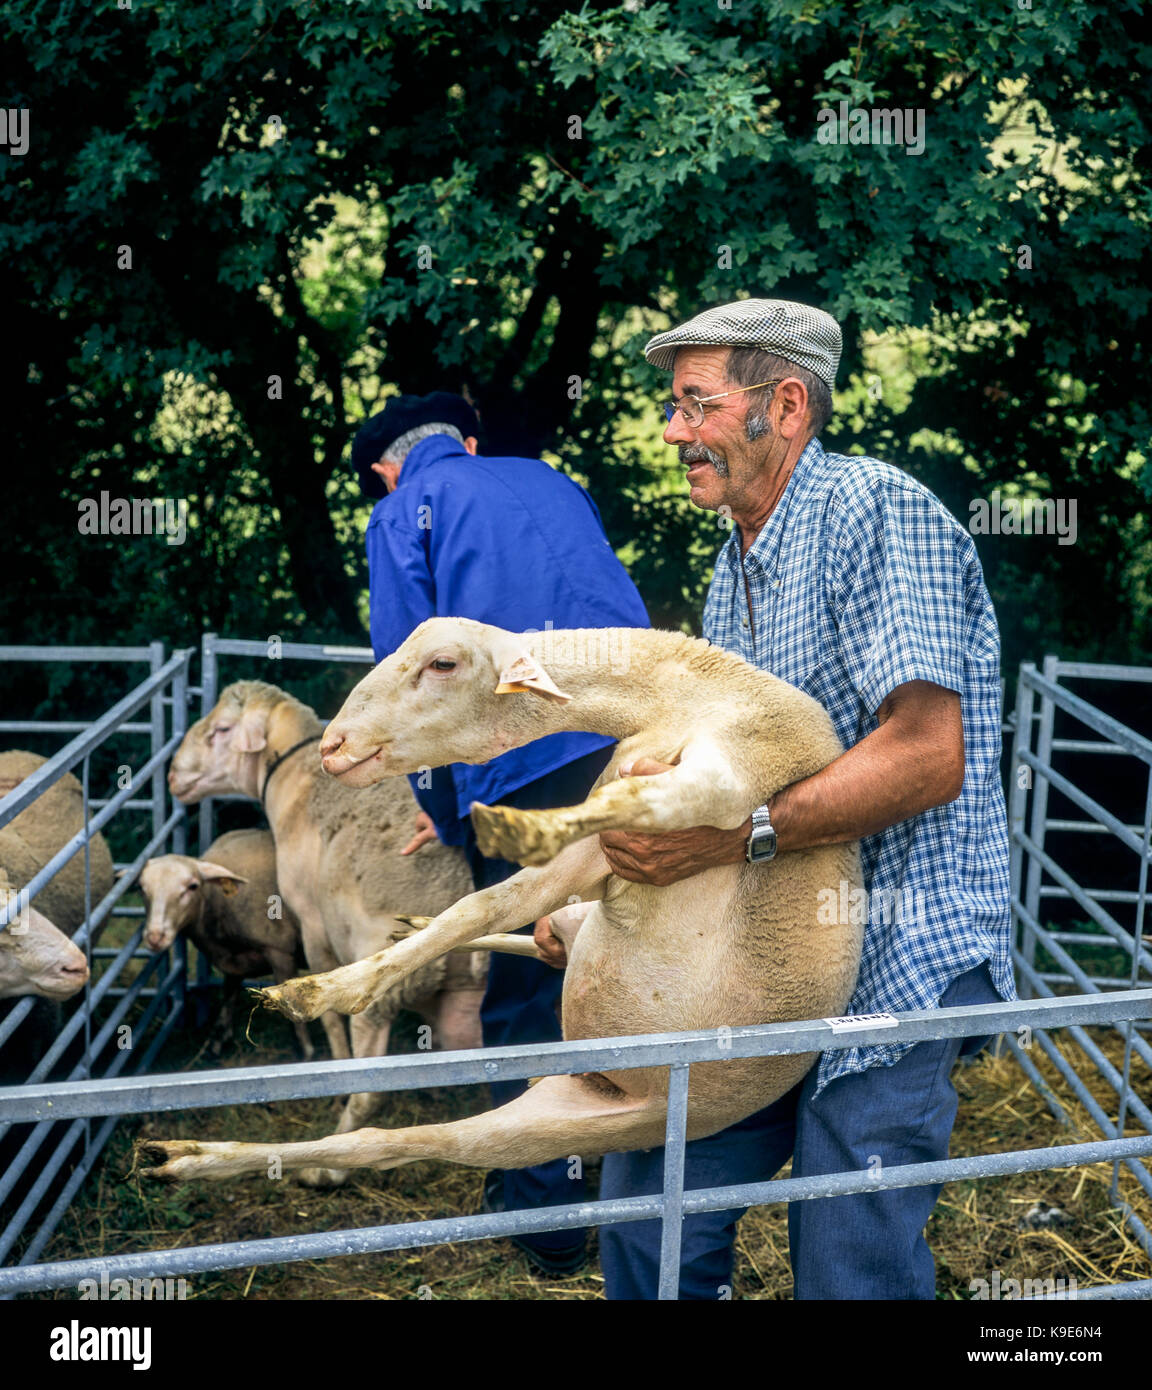 Agriculteur transportant un mouton, brebis, marché bestiaux Montfroc, Drôme, Provence, France Banque D'Images